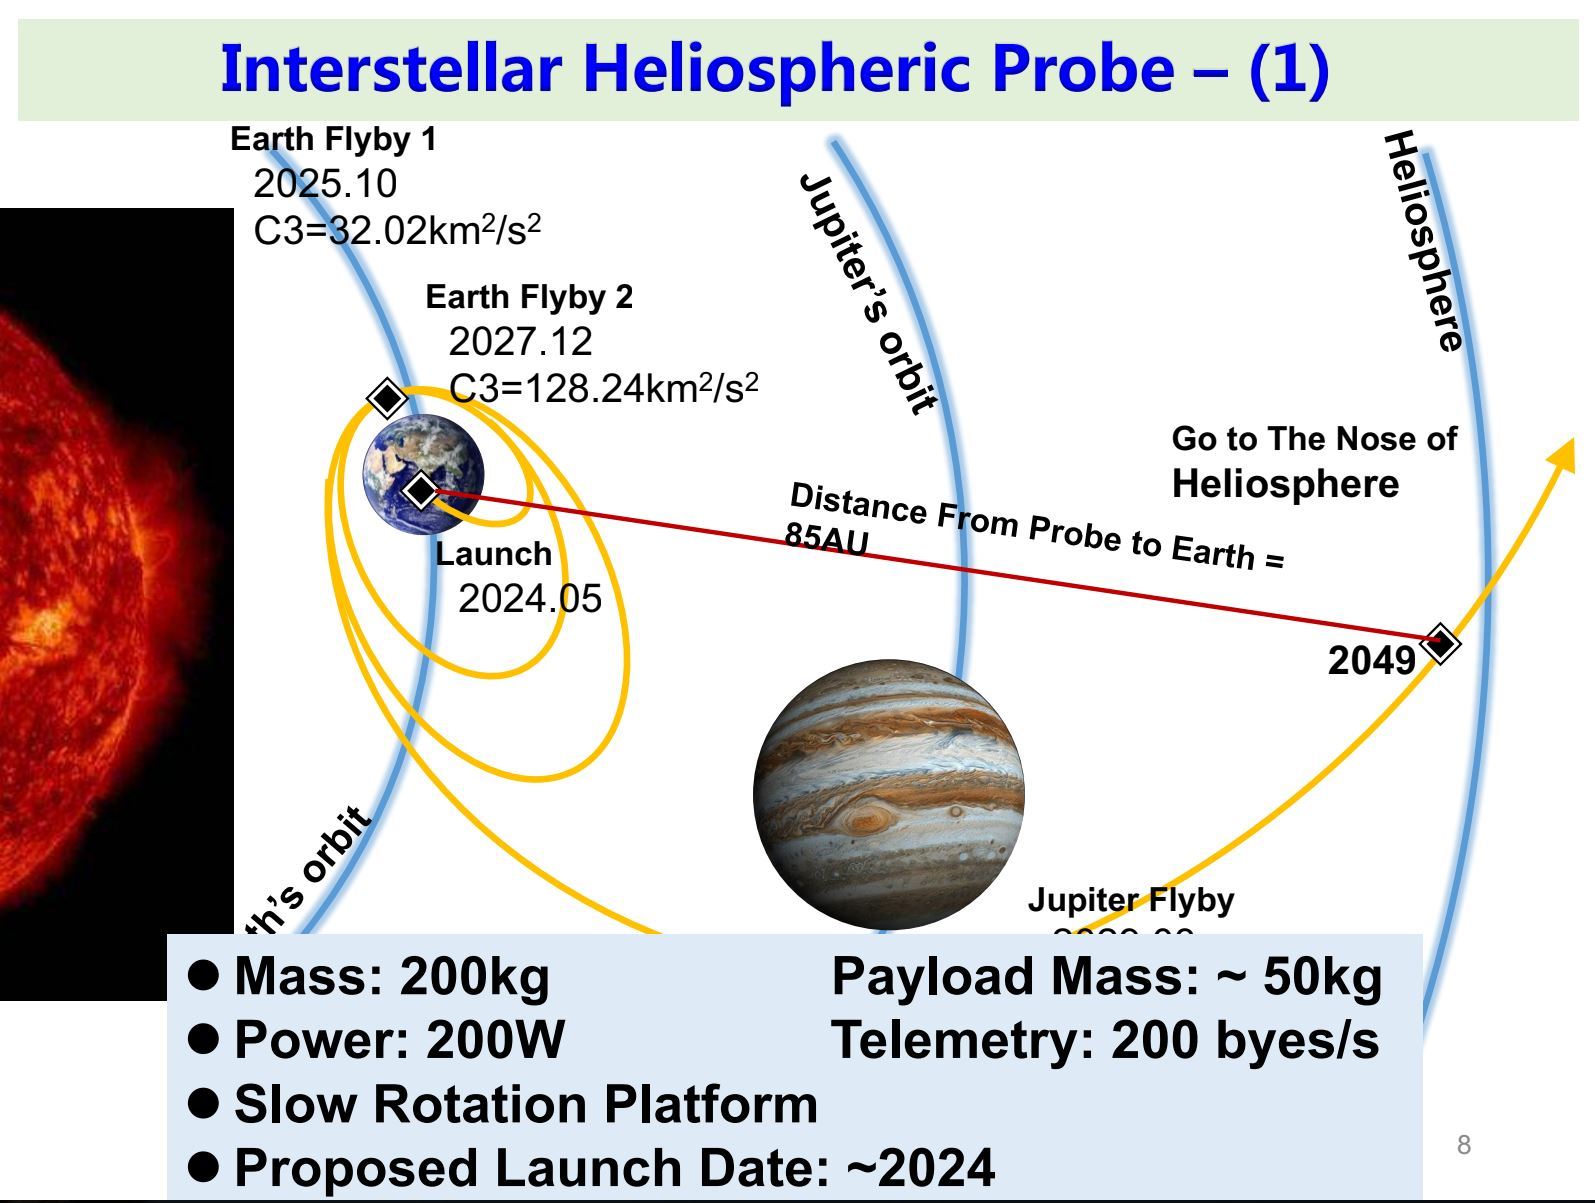 20191112_IHP-spacecraft-1-heliosphere-head.jpg